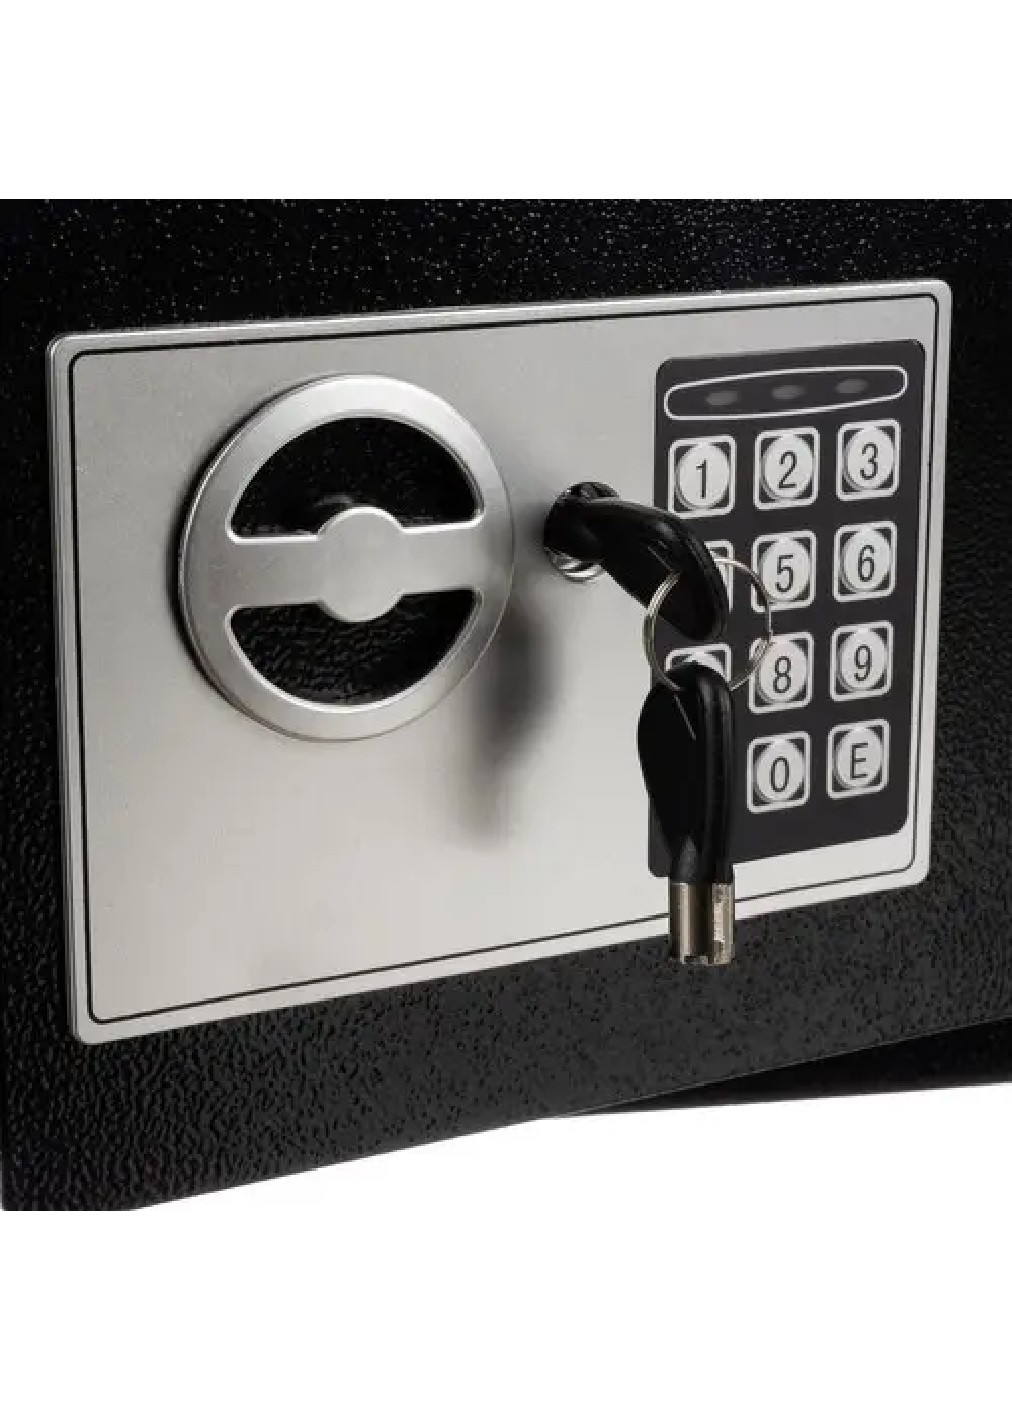 Мебельный металлический сейф с ключами кодом электронным замком для дома офиса 20х31х20 см (475482-Prob) Черный Unbranded (268024579)